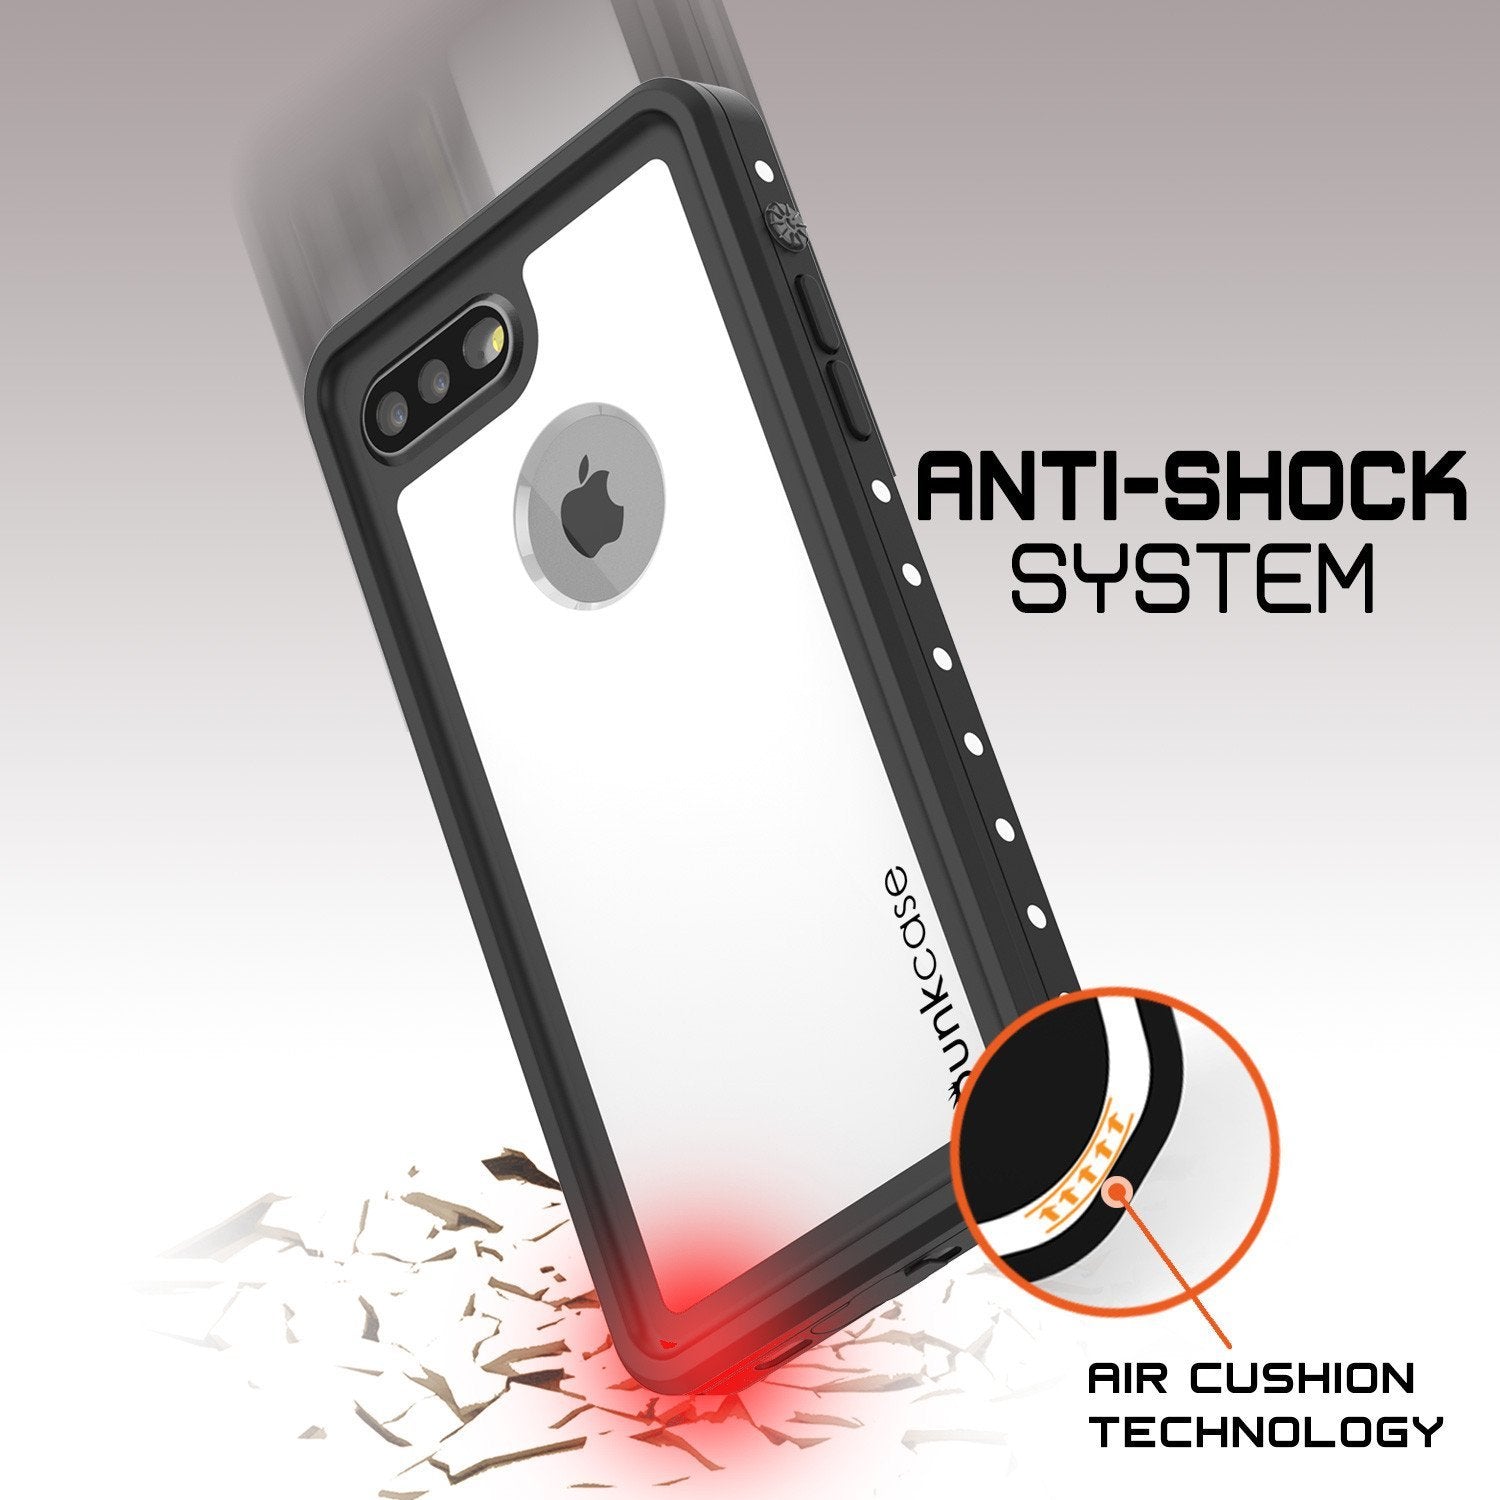 iPhone 8+ Plus Waterproof IP68 Case, Punkcase [White] [StudStar Series] [Slim Fit] [Dirtproof] - PunkCase NZ